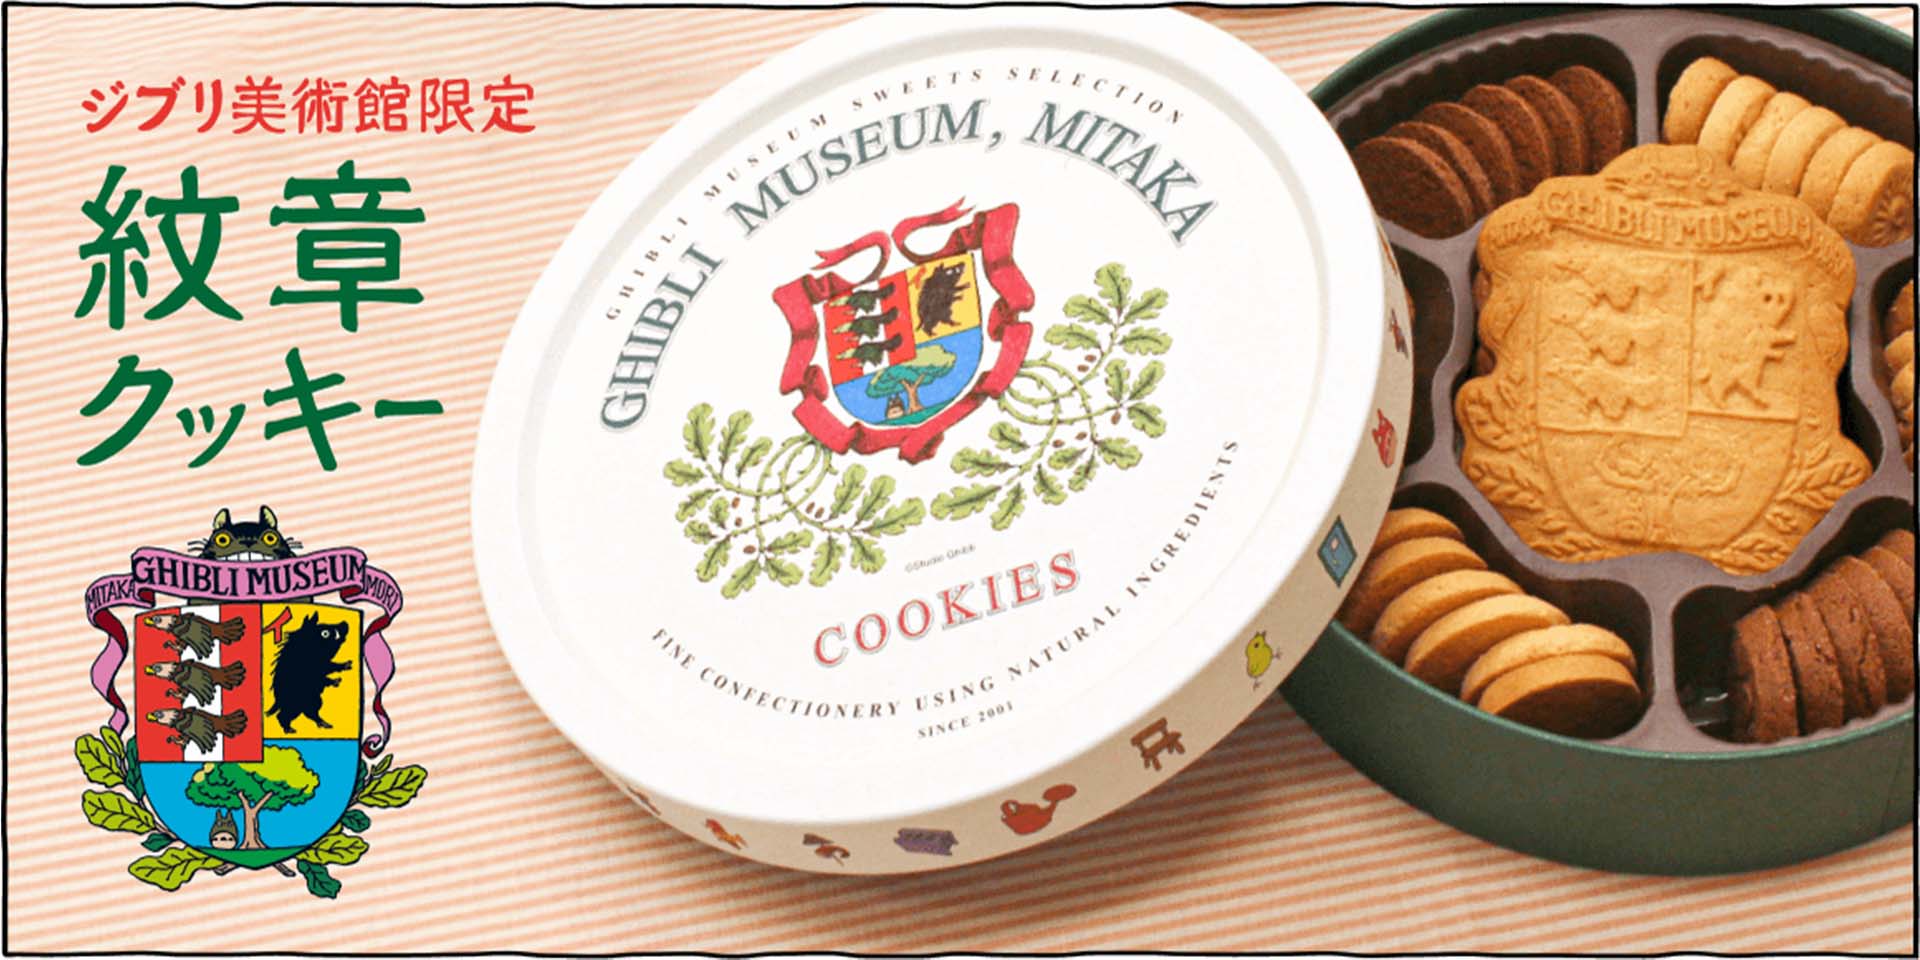 ジブリ美術館定番の人気商品、紋章クッキーです。